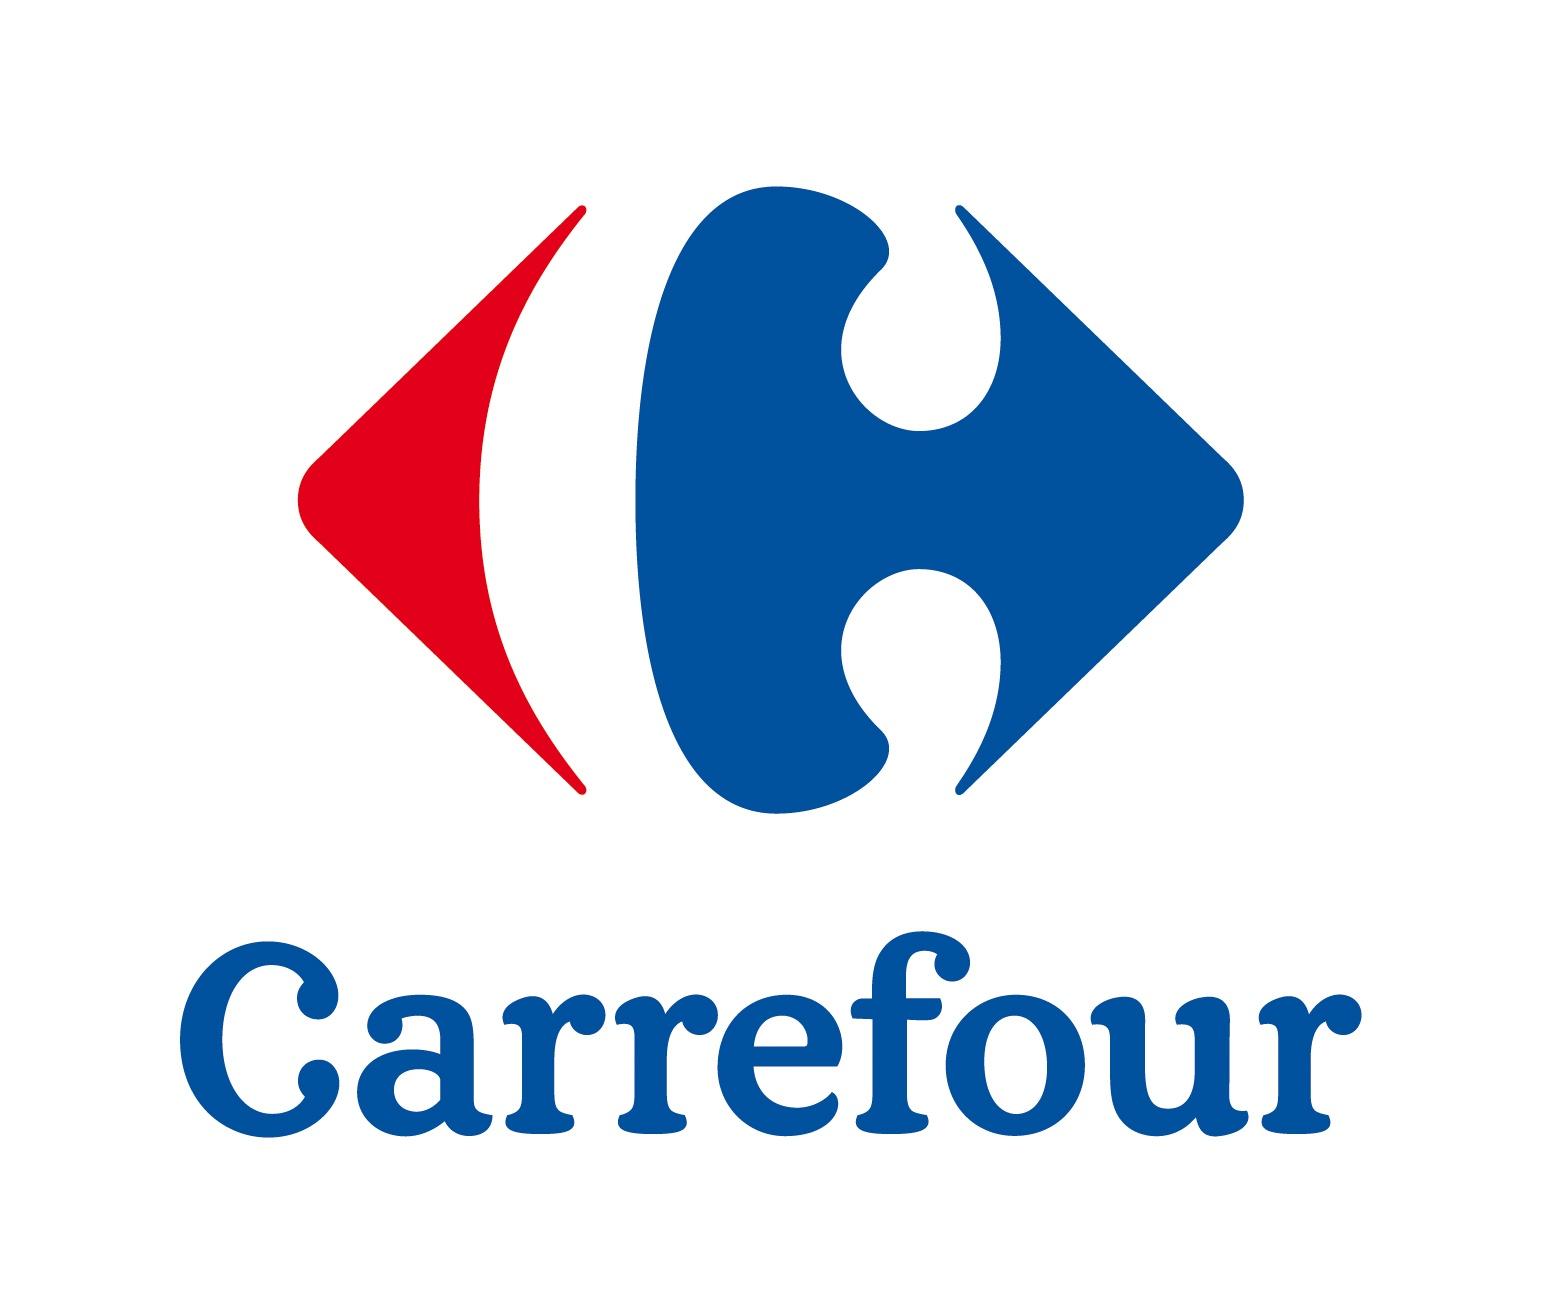 Carrefour La Valette Du Var